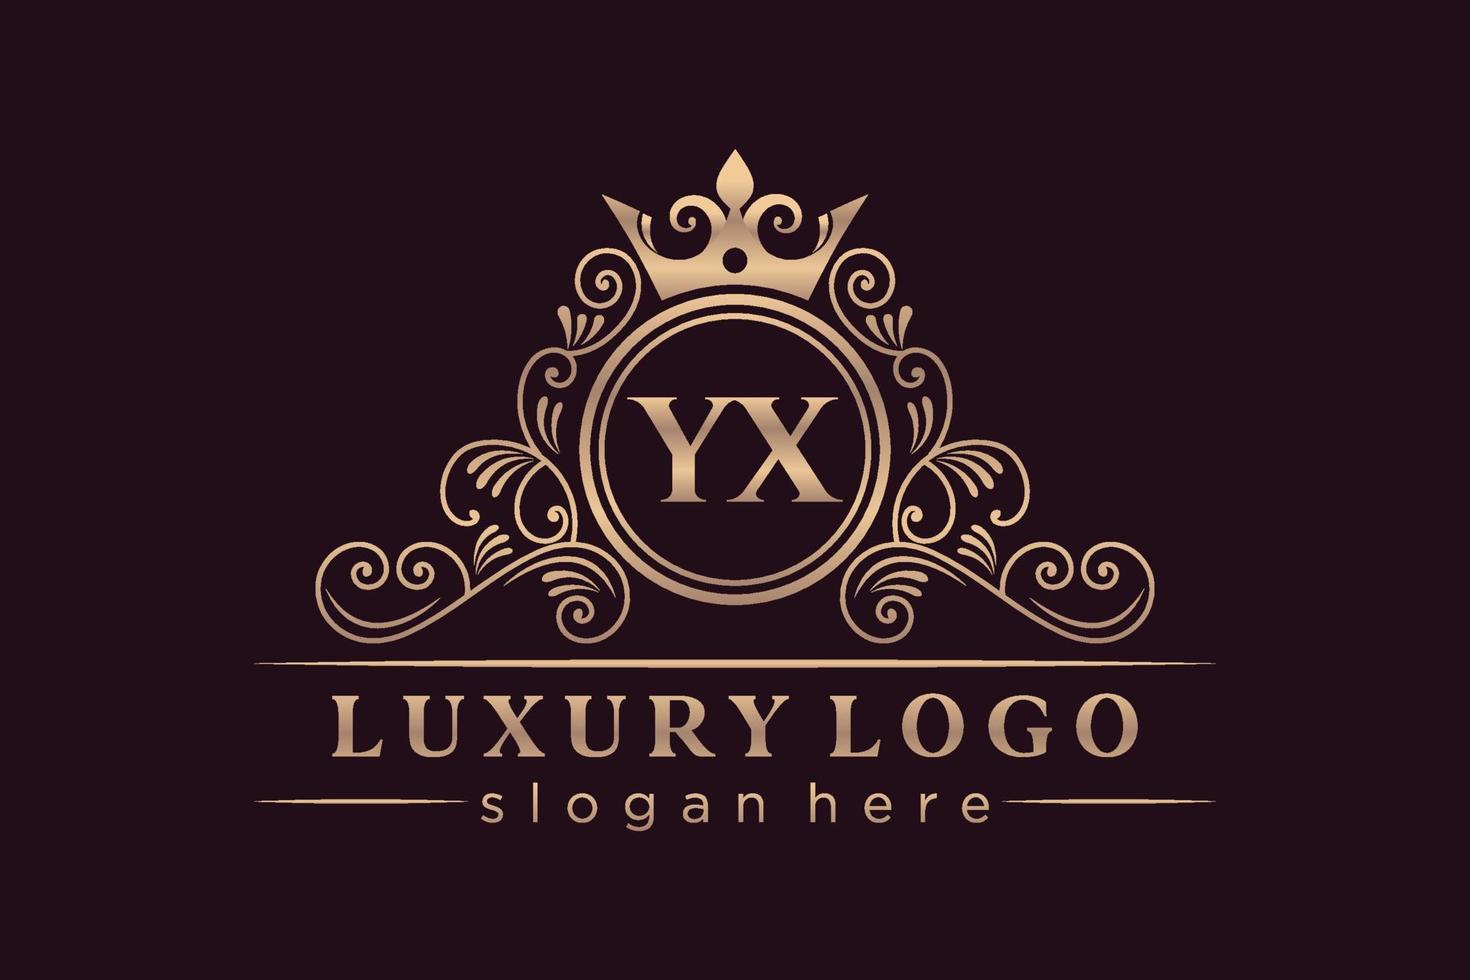 YX Initial Letter Gold calligraphic feminine floral hand drawn heraldic monogram antique vintage style luxury logo design Premium Vector